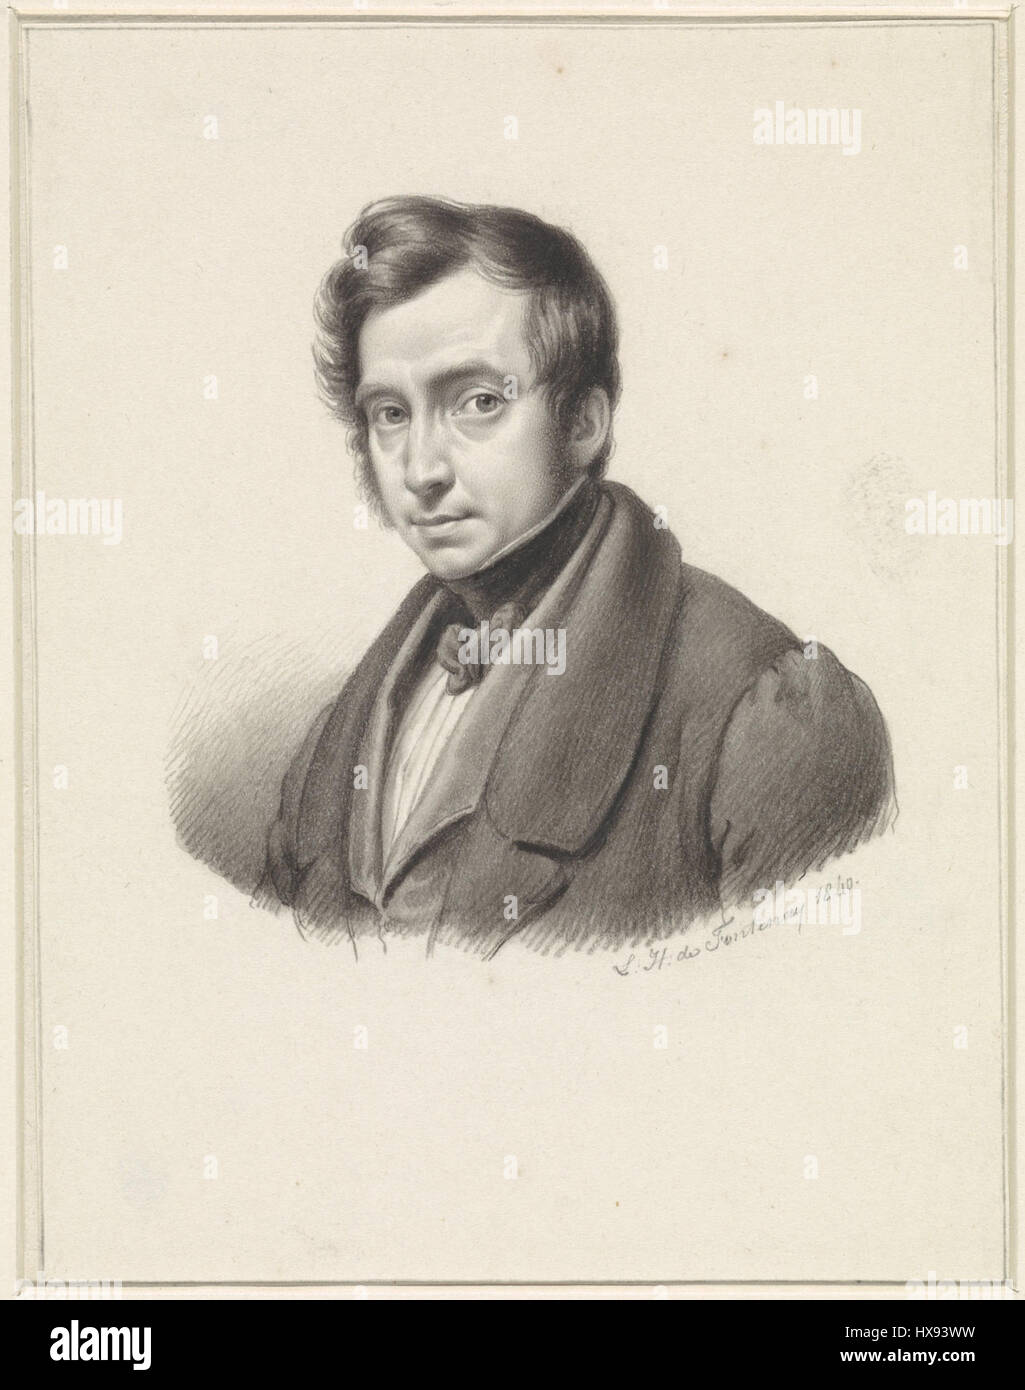 Zelfportret van Louis Henri de Fontenay (1840) Stock Photo